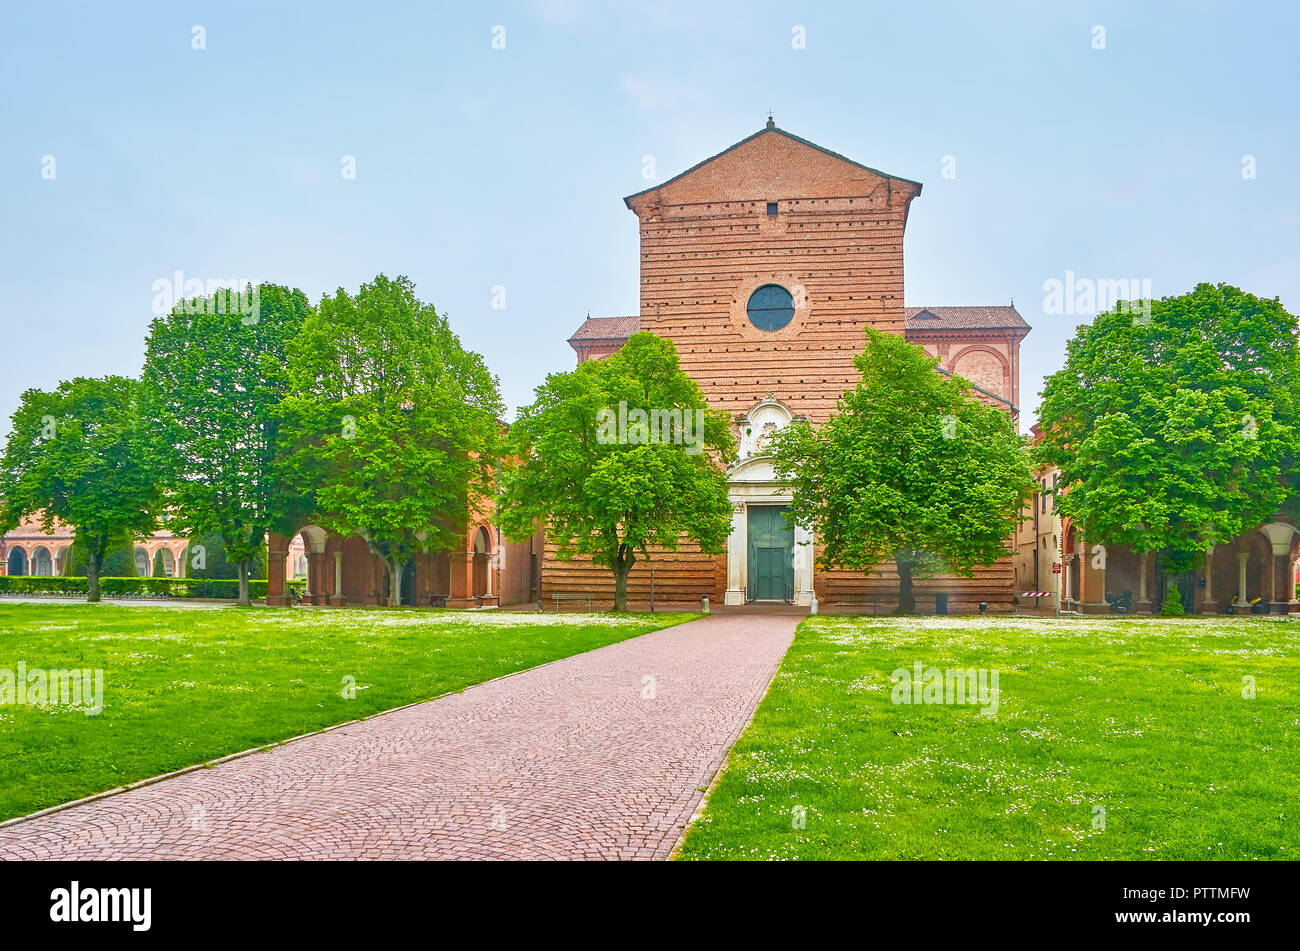 La medievale chiesa di San Cristoforo si trova all'entrata del famoso cimitero monumentale della Certosa di Ferrara, appartiene all'Ordine Certosino, Foto Stock